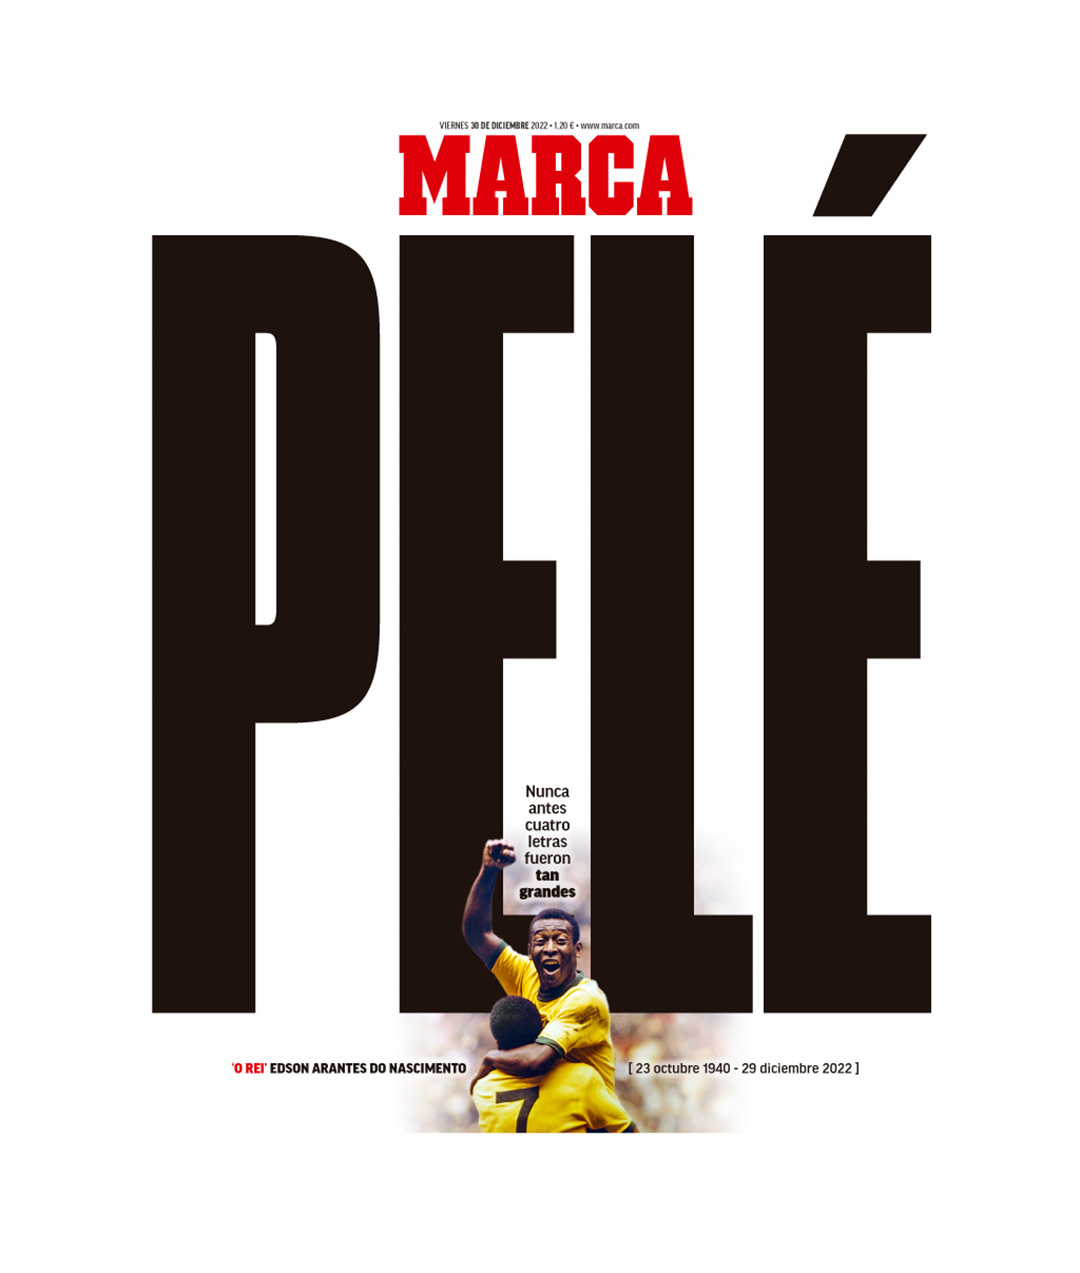 La portada de Marca por el fallecimiento de Pelé